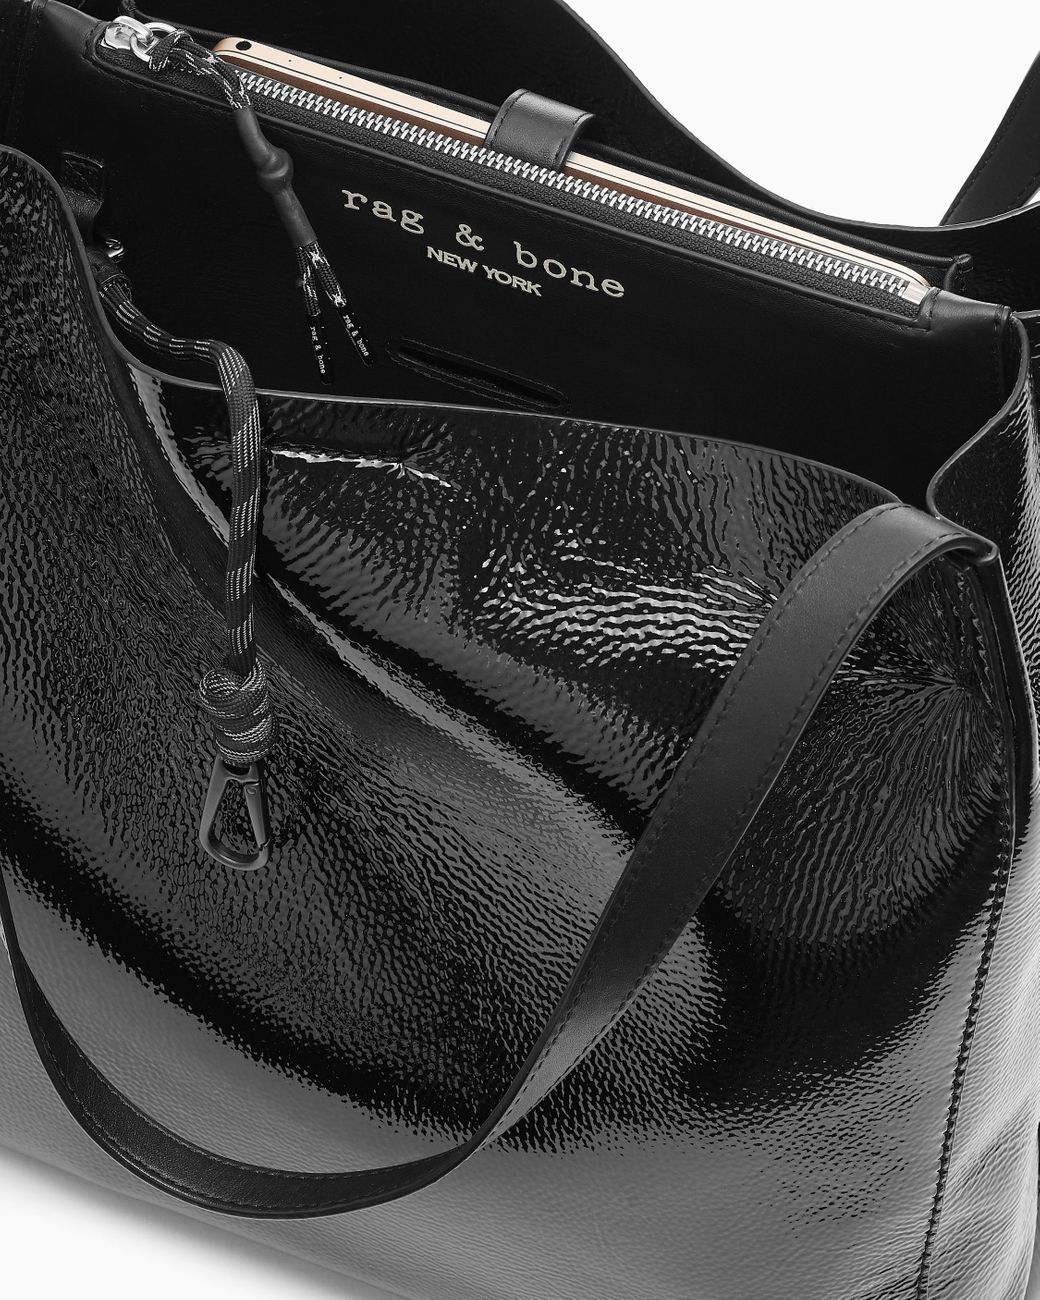 Rag & Bone Field Leather Messenger Bag Black Shoulder Handbag Adjustable  Strap | eBay